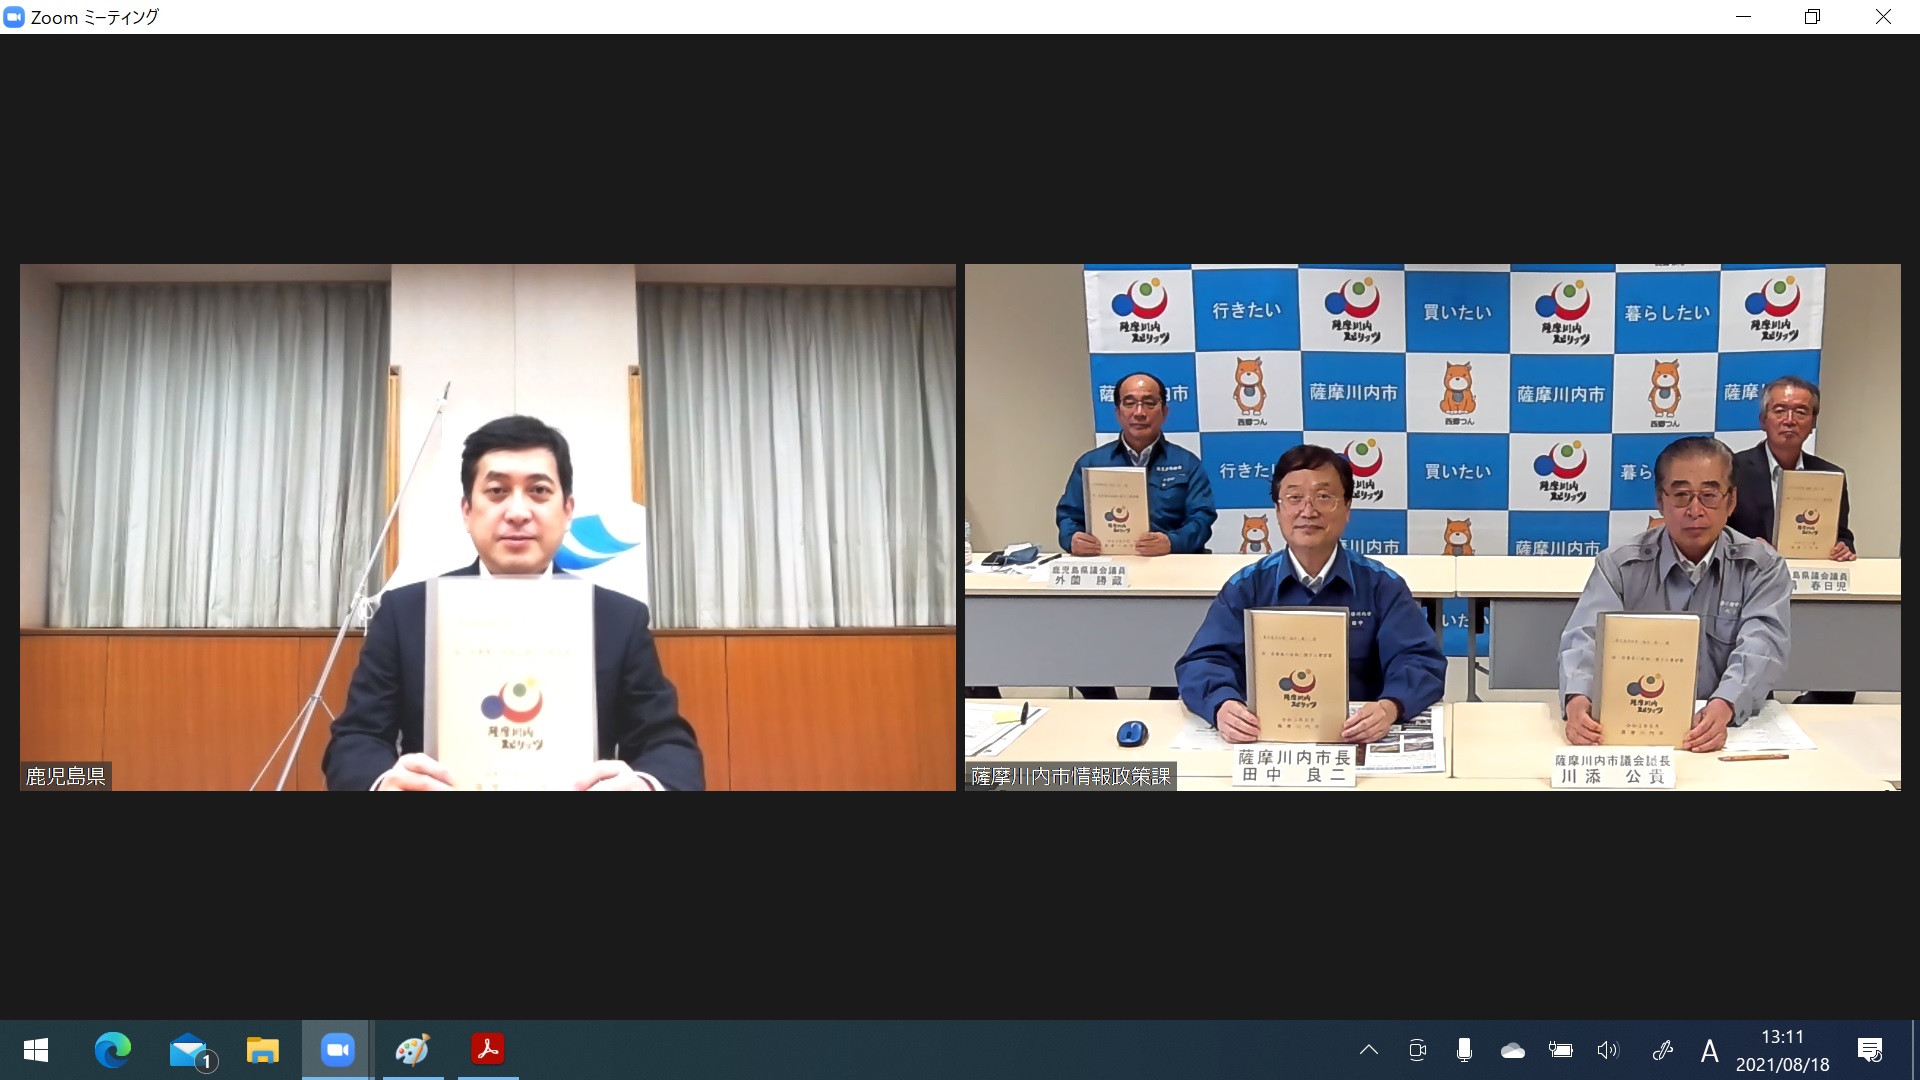 鹿児島県知事と田中市長たちがZOOM会議をしているPC画面のキャプチャー写真